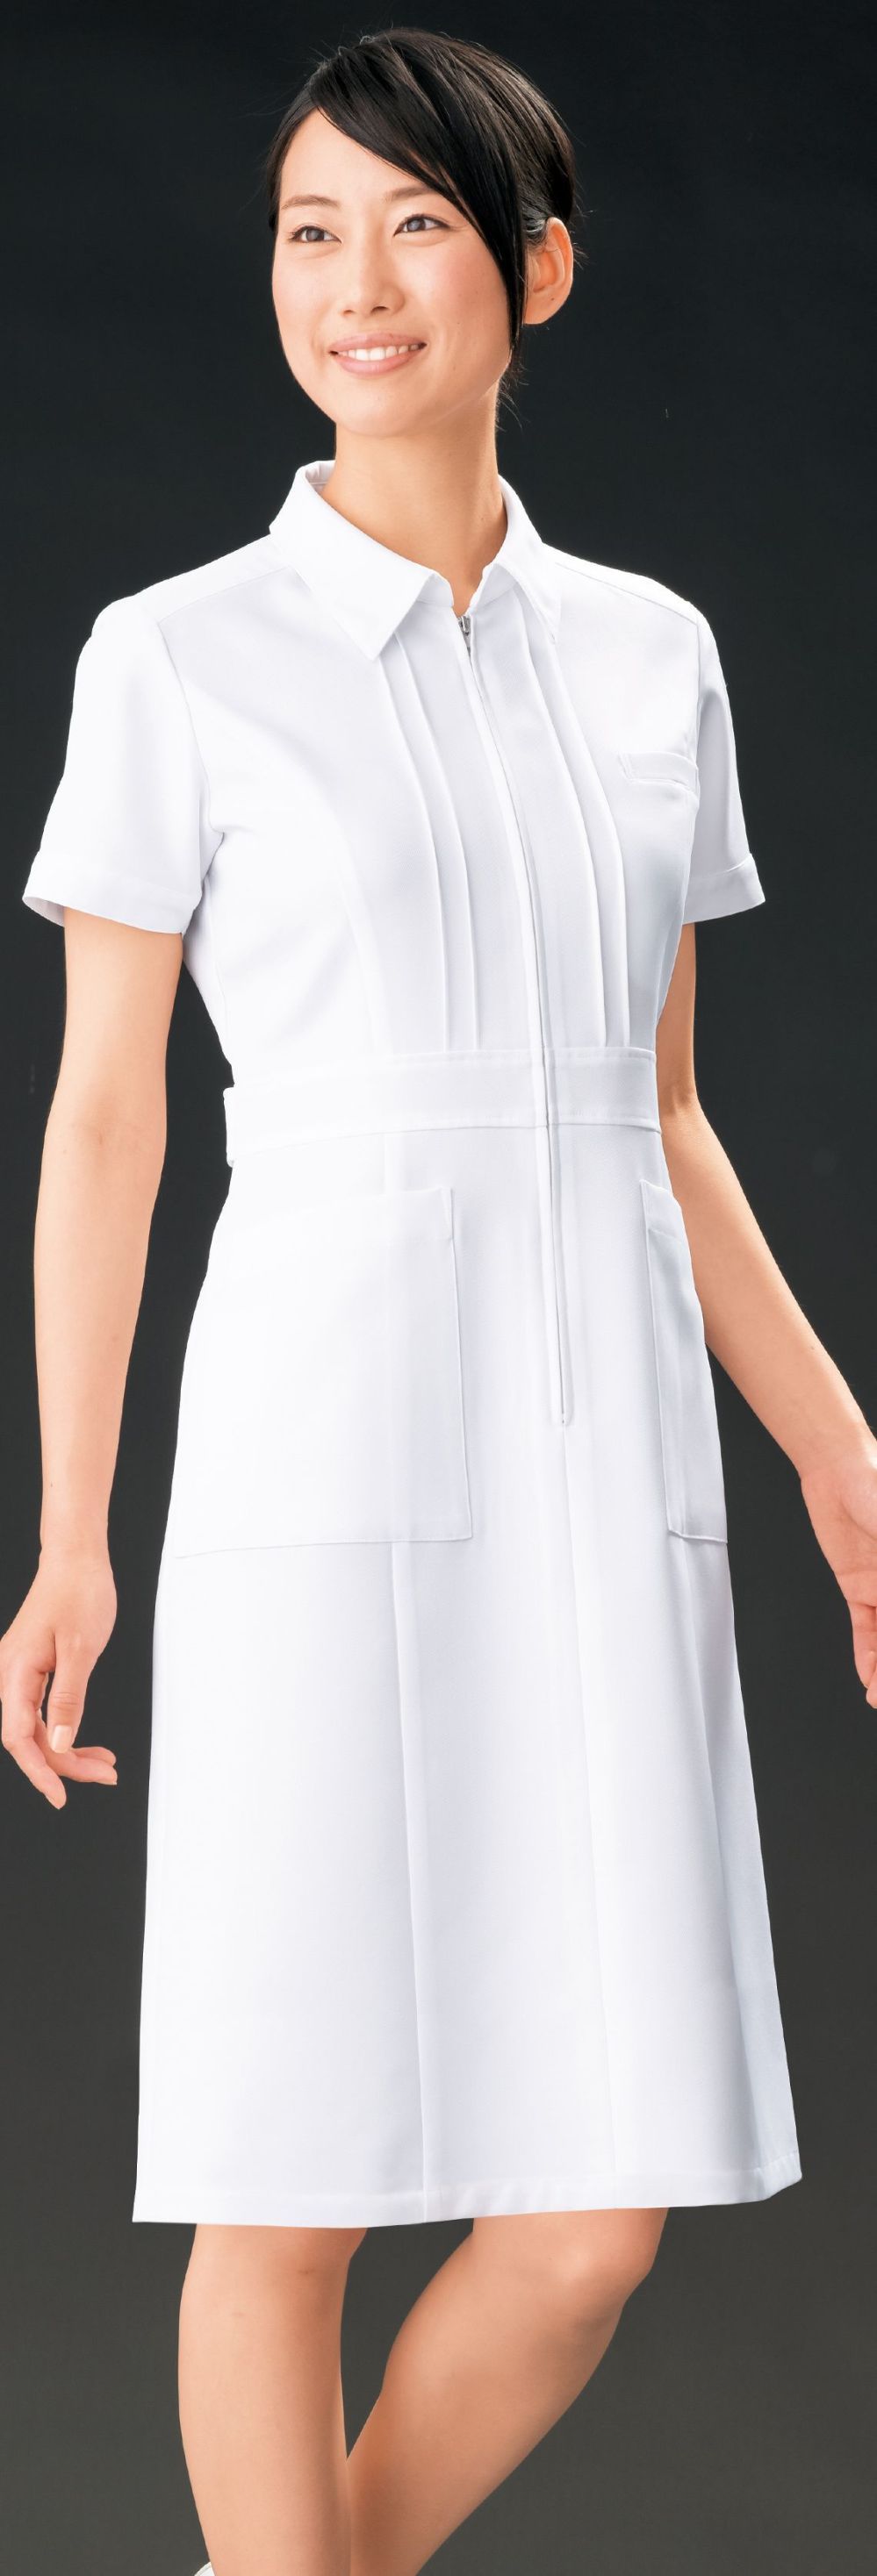 医療白衣com ワンピース オンワード OP-3016 医療白衣の専門店